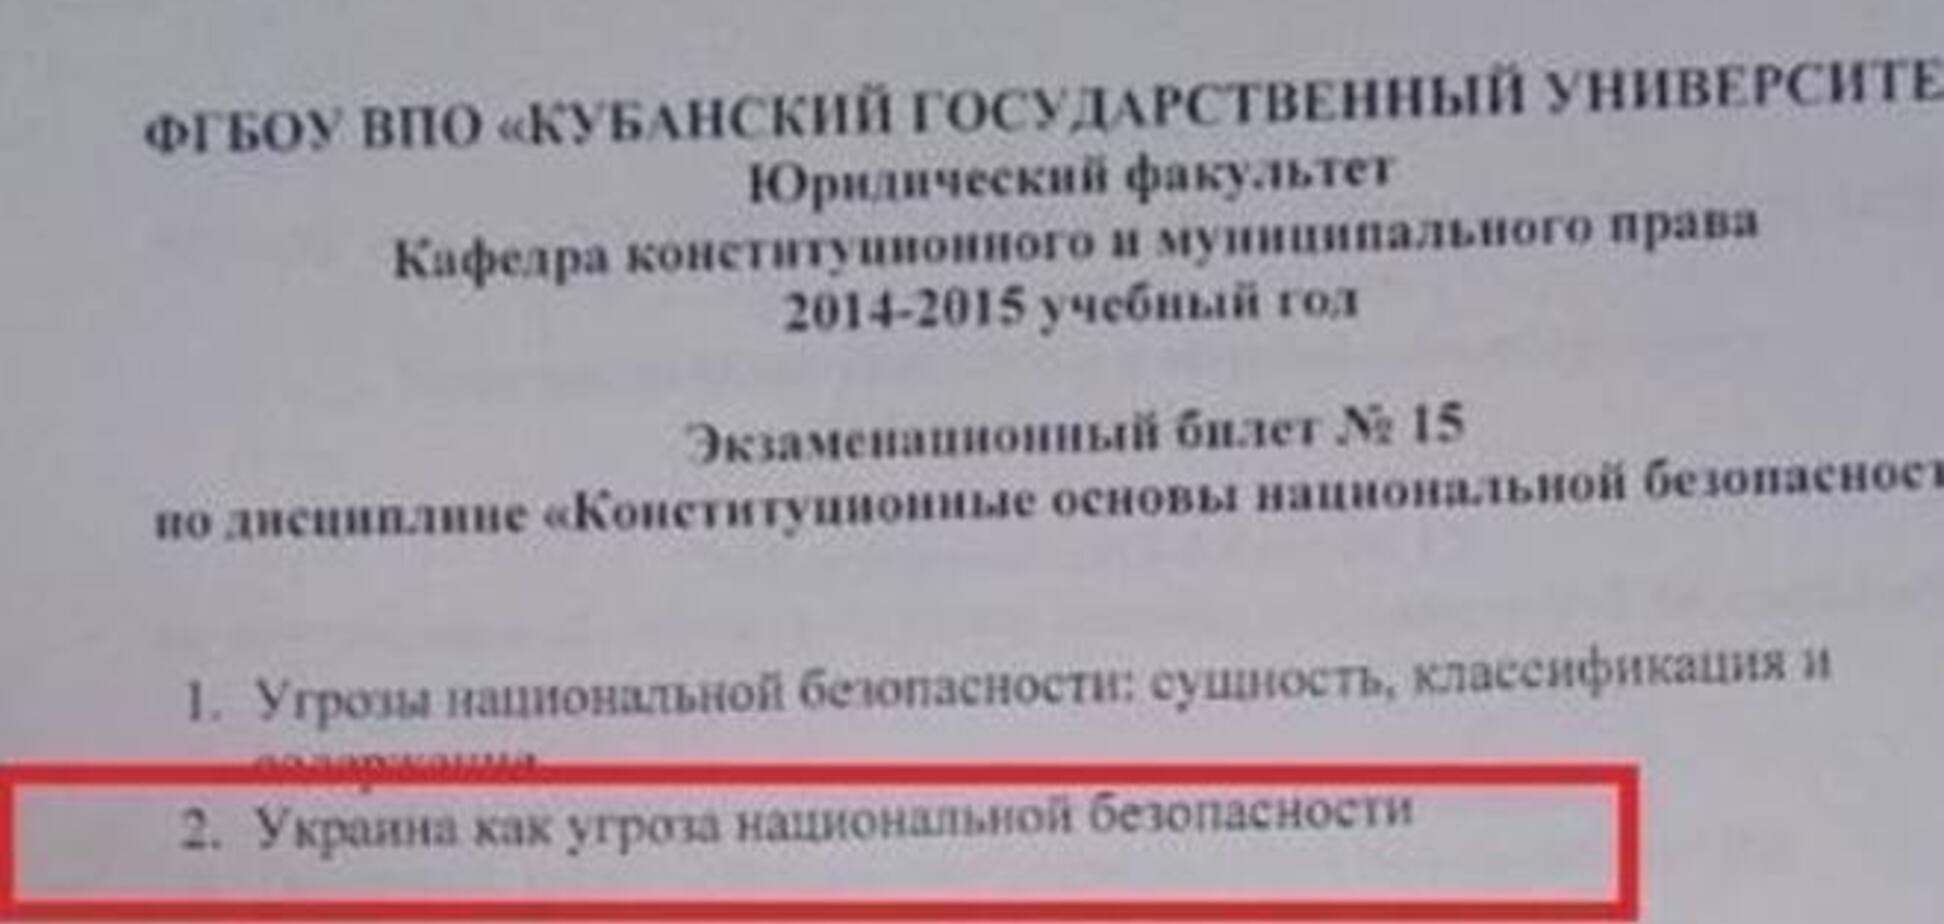 Российские студенты изучают, как Украина 'угрожает' нацбезопасности РФ:  фото экзаменационного билета